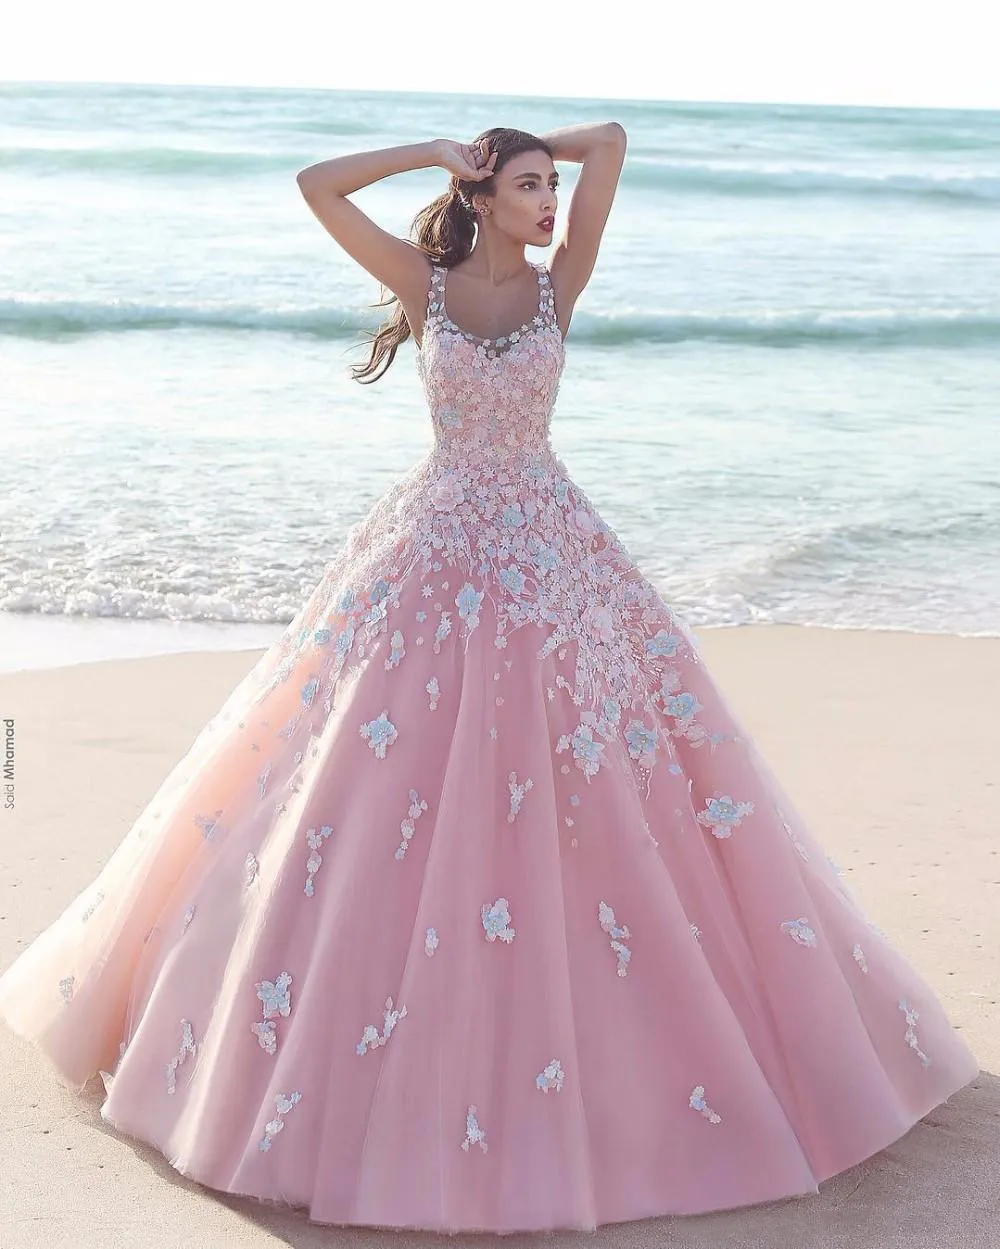 Prenses Çiçek Çiçek Pembe Balo Quinceanera Elbiseler 2021 Aplike Tül Scoop Kolsuz Dantel Korse Uzun Gelinlik Modelleri Örgün Parti